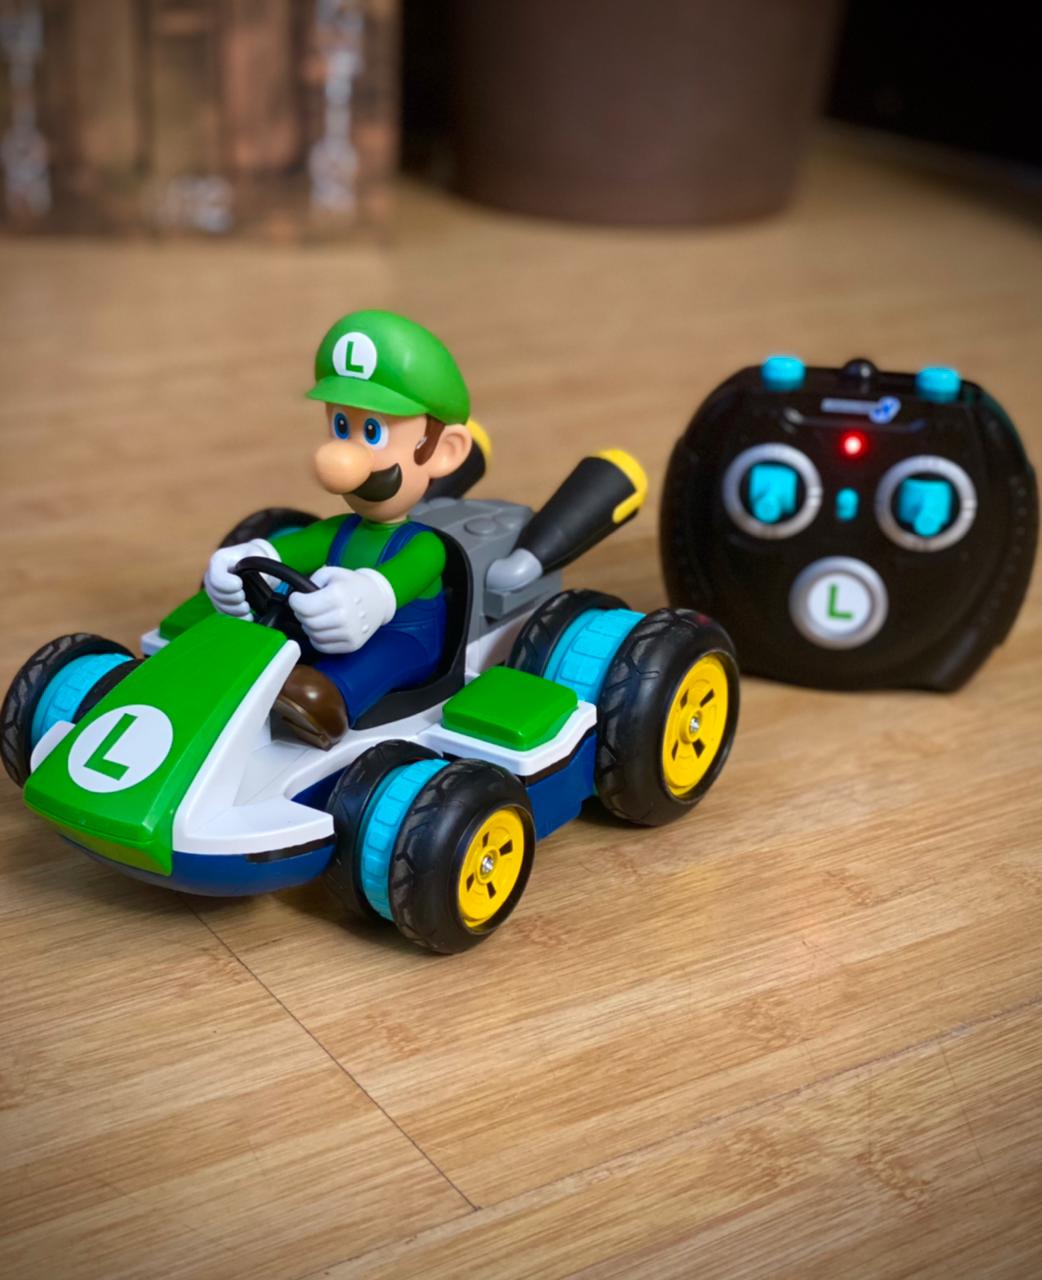 Brinquedo Carro Carrinho Controle Remoto Luigi Anti-Gravity R/C Racer: Mario Kart Mario Bros- Jakks Pacific